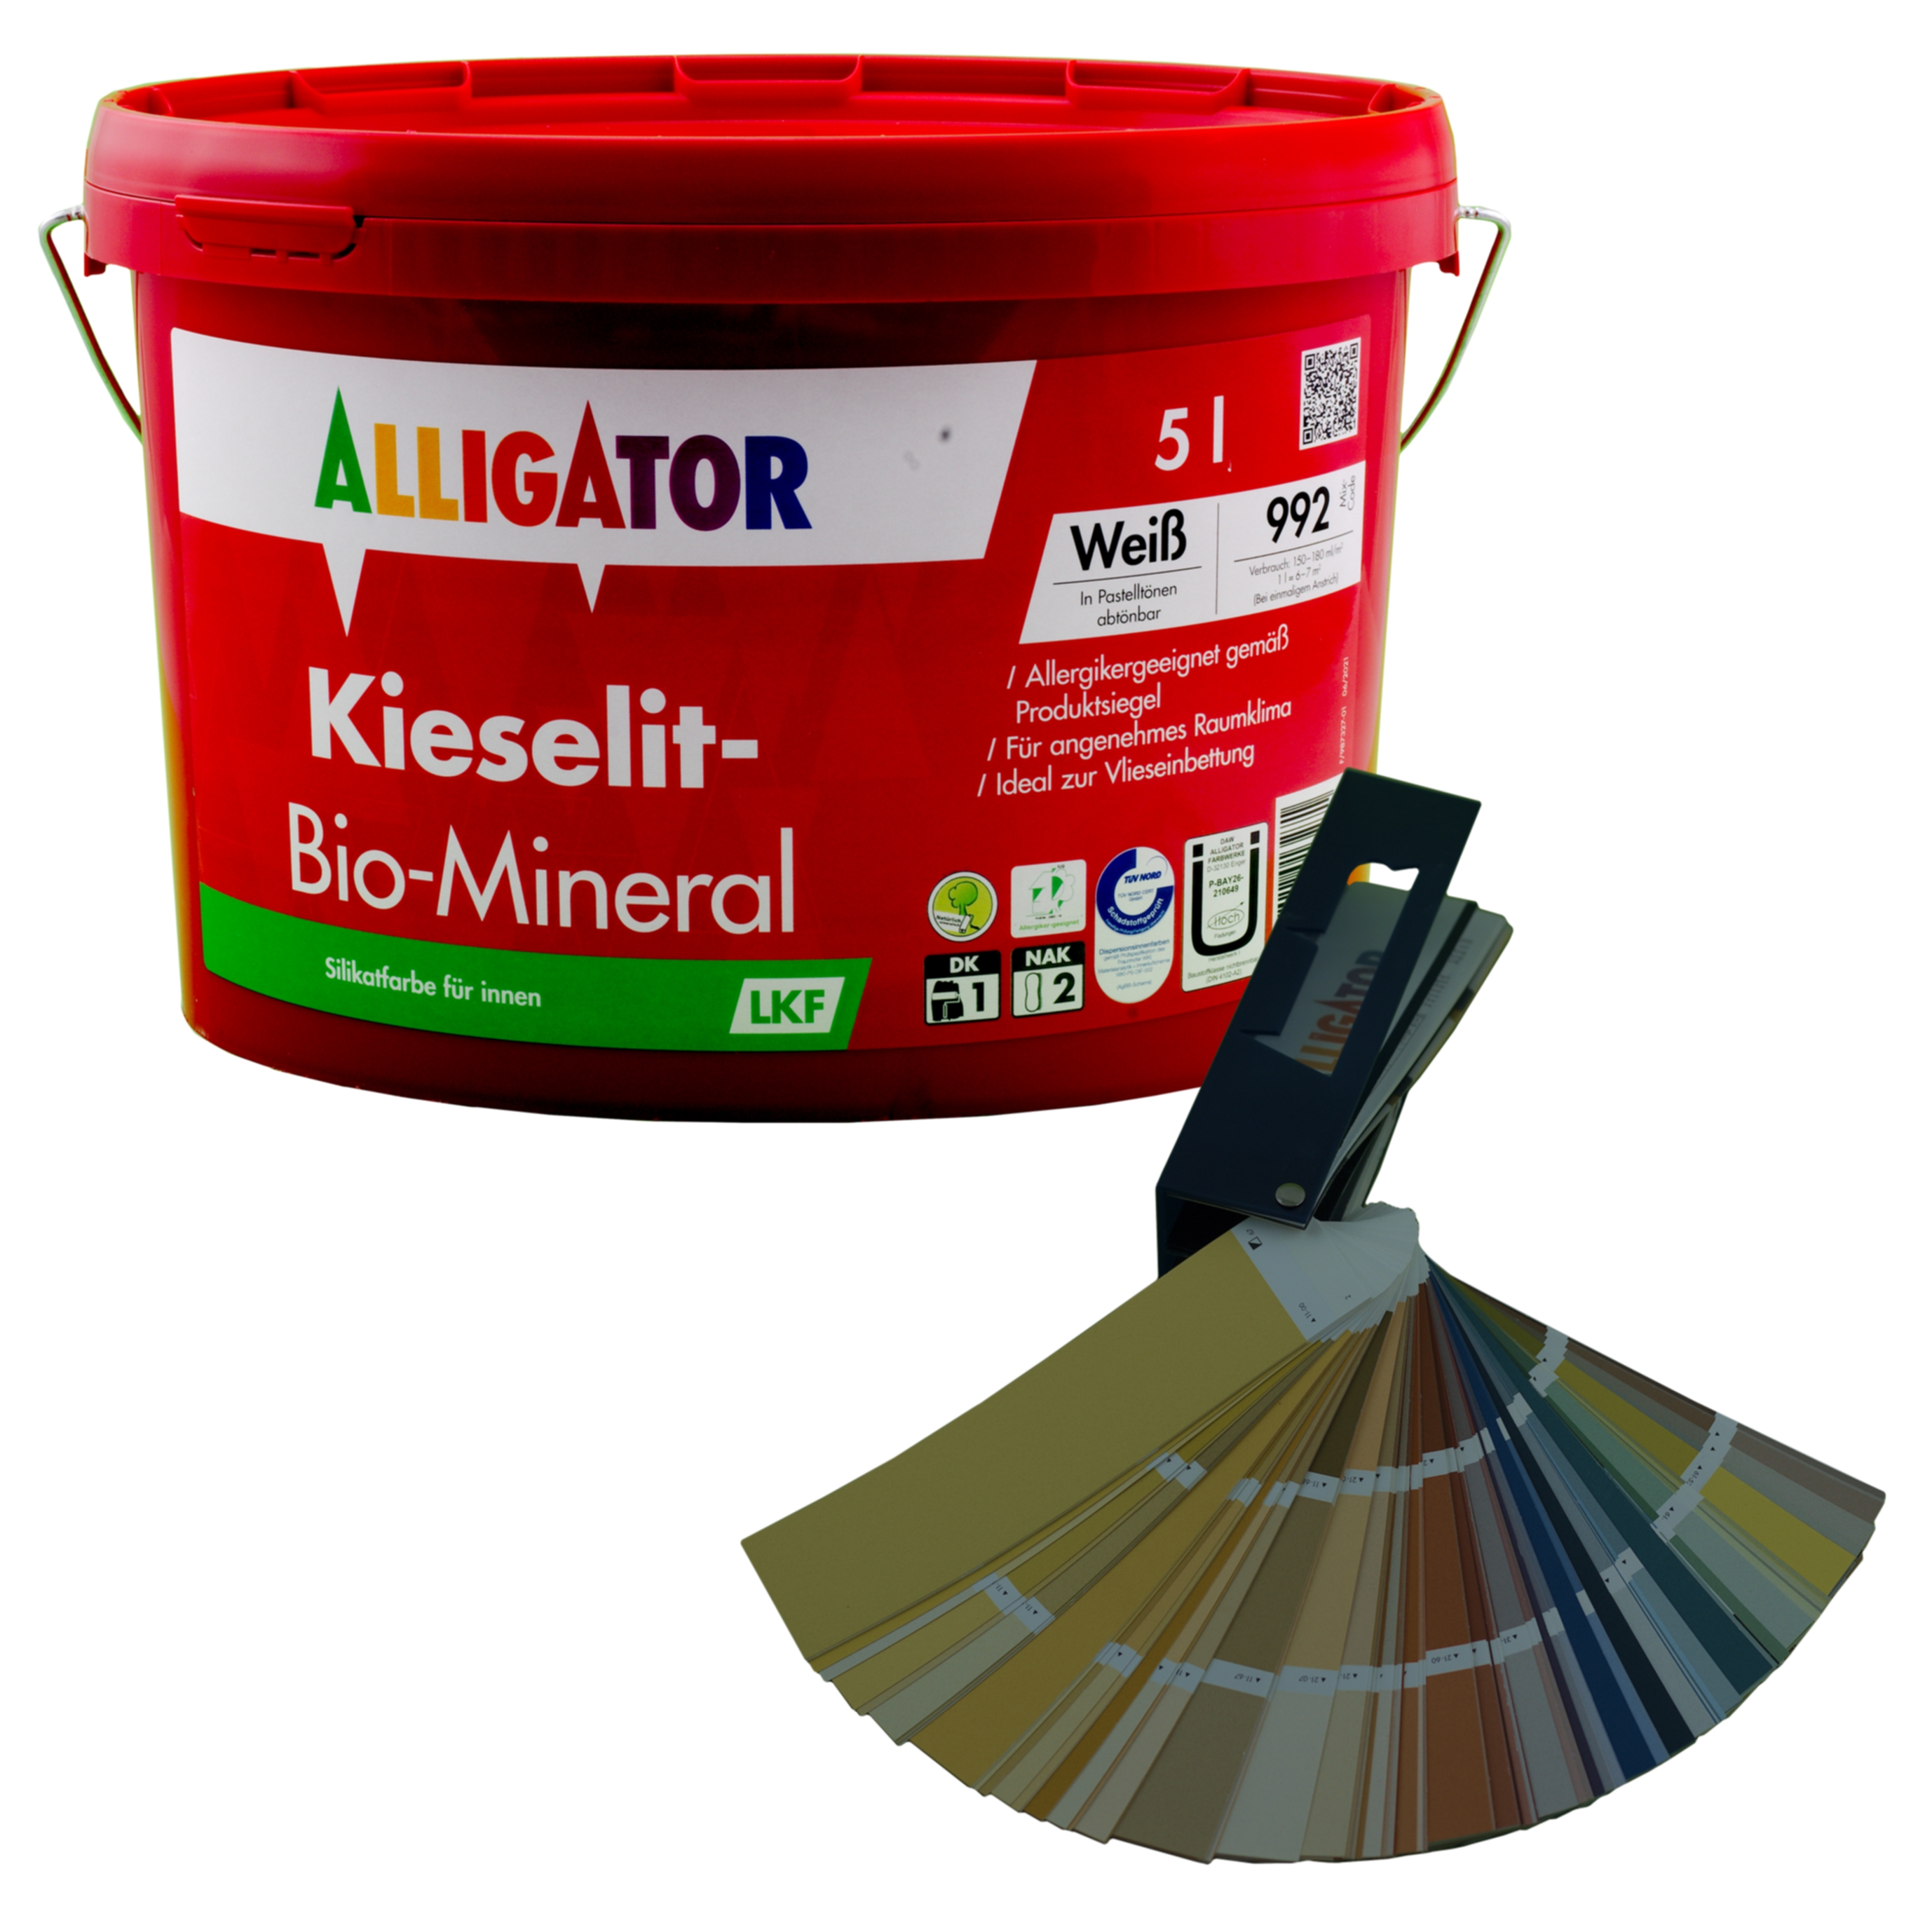 Alligator Kieselit-Bio-Mineral LKF   5,0 ltr. mix  PG 5